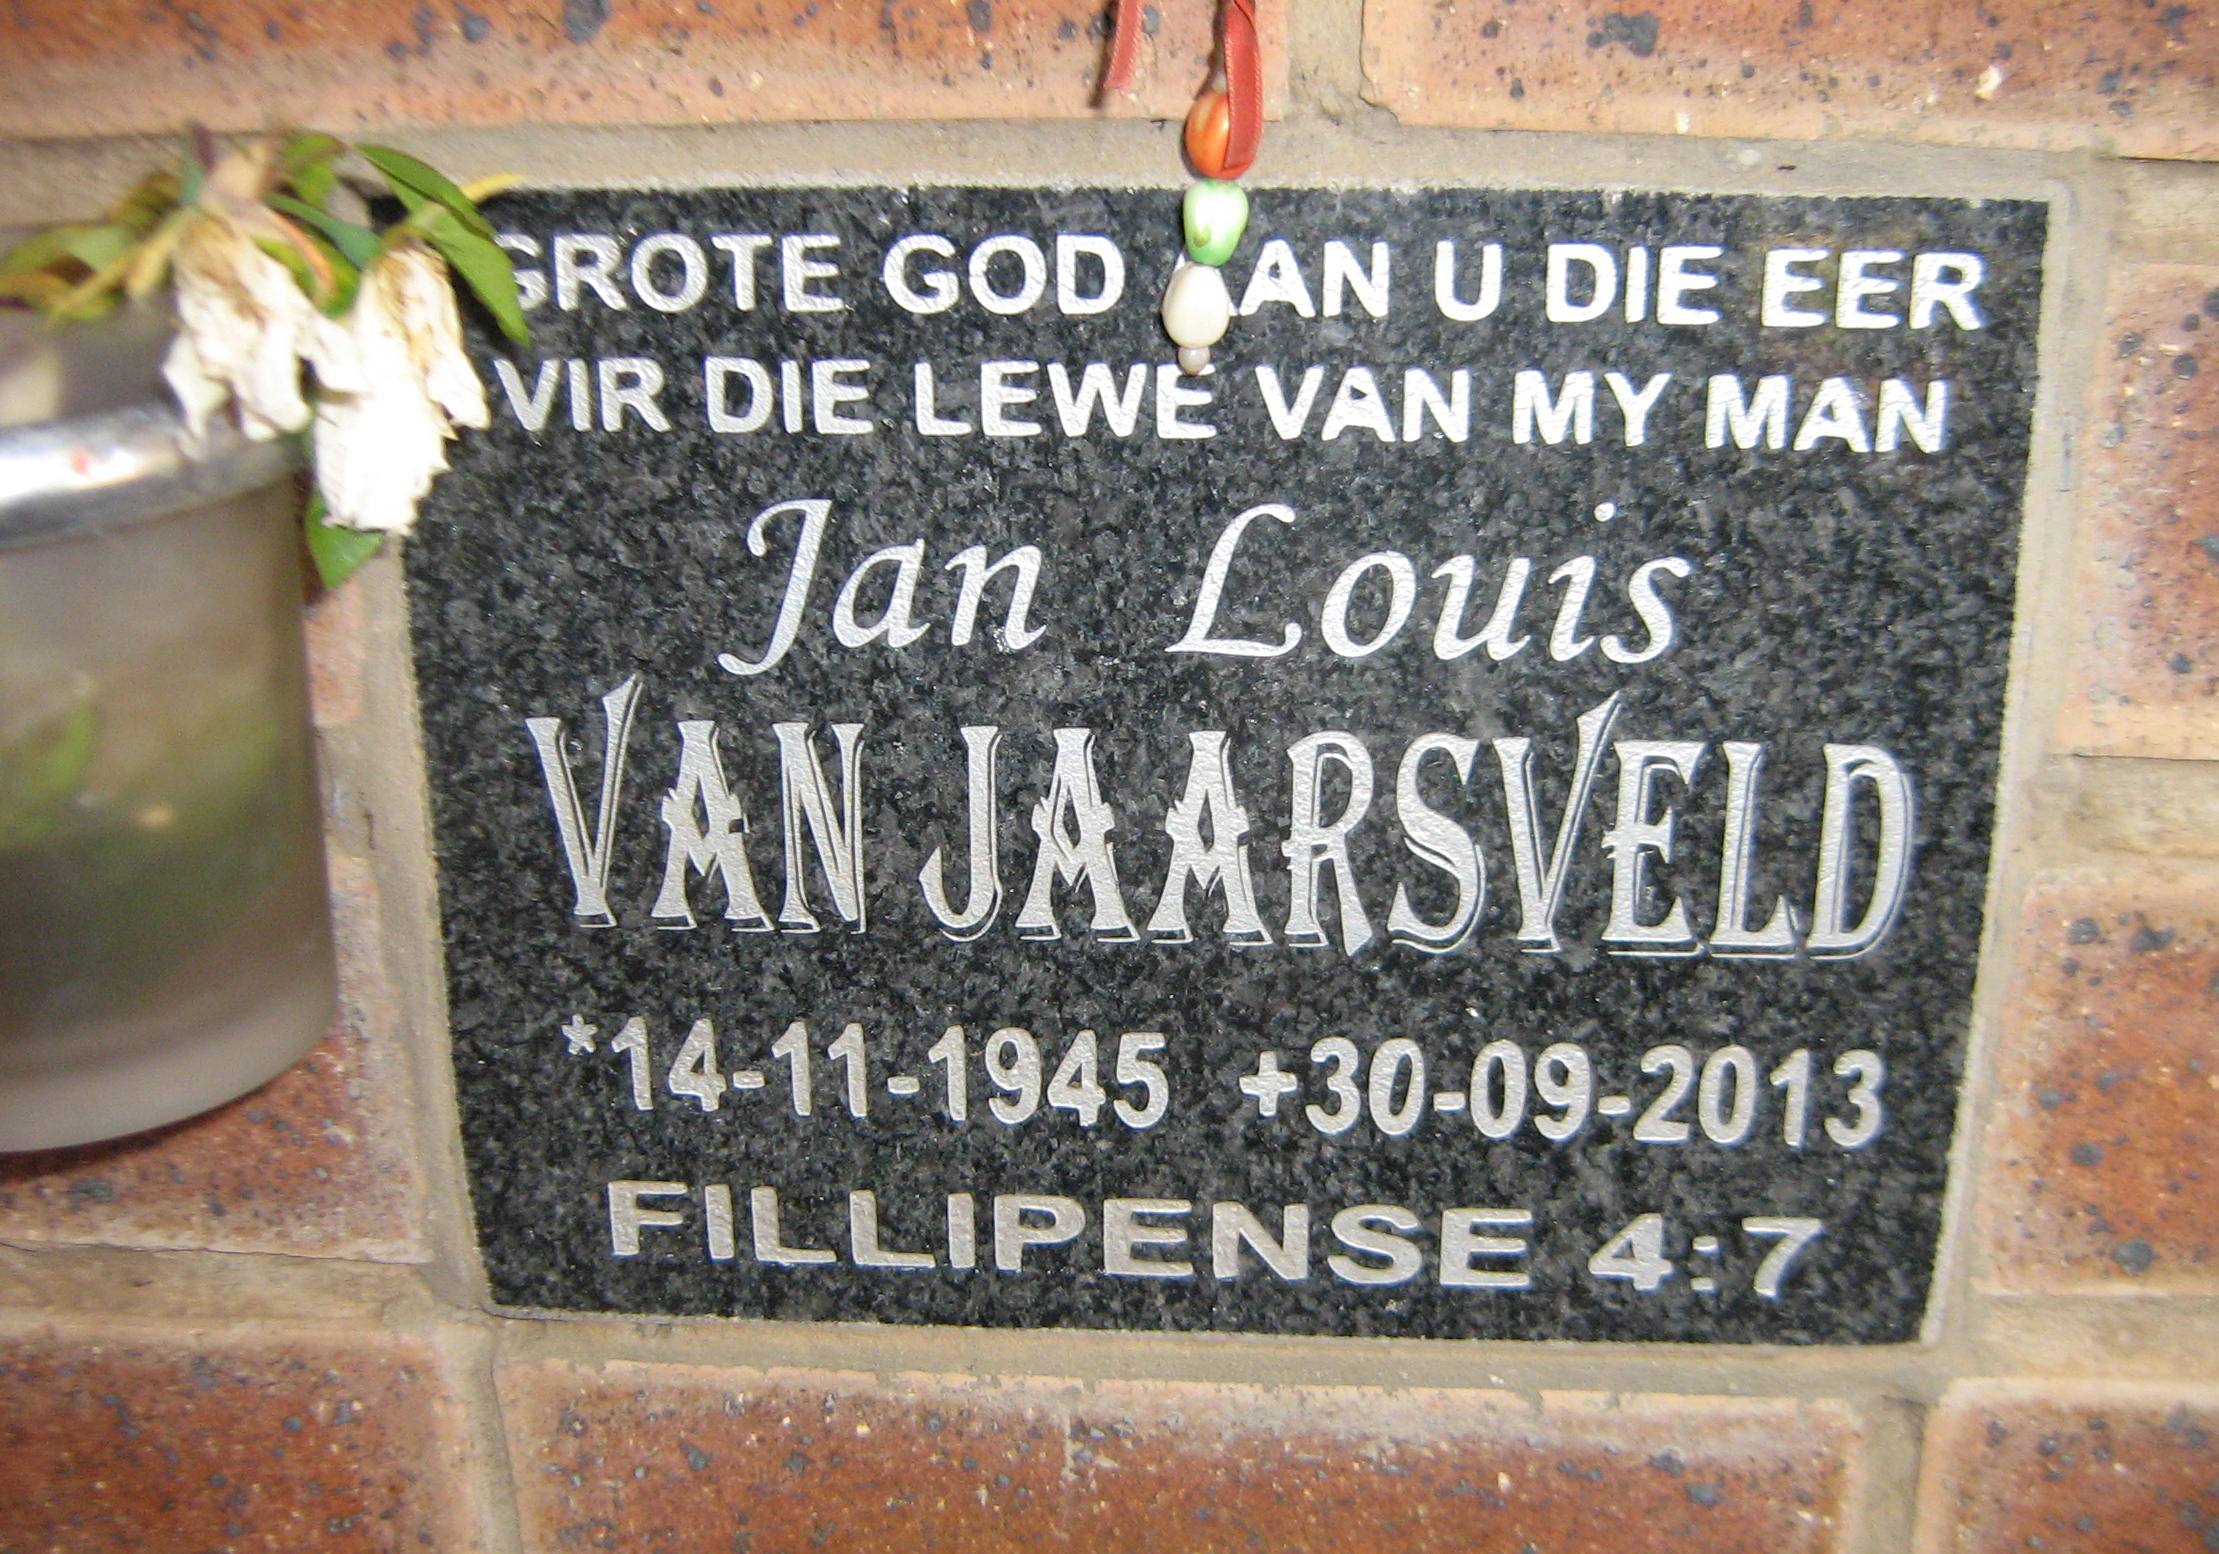 JAARSVELD Jan Louis, van 1945-2013